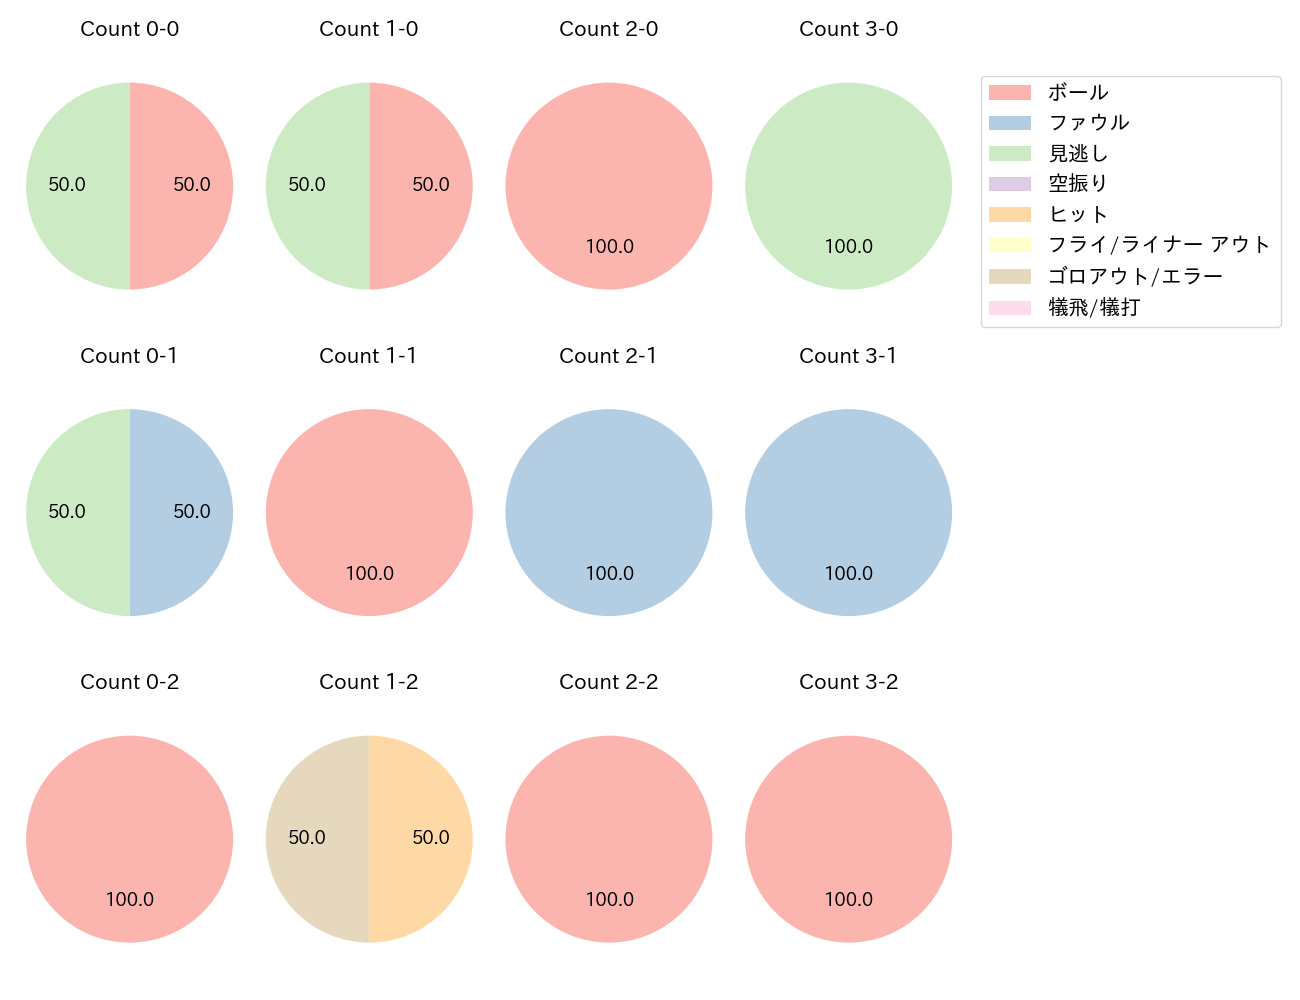 吉川 尚輝の球数分布(2023年3月)